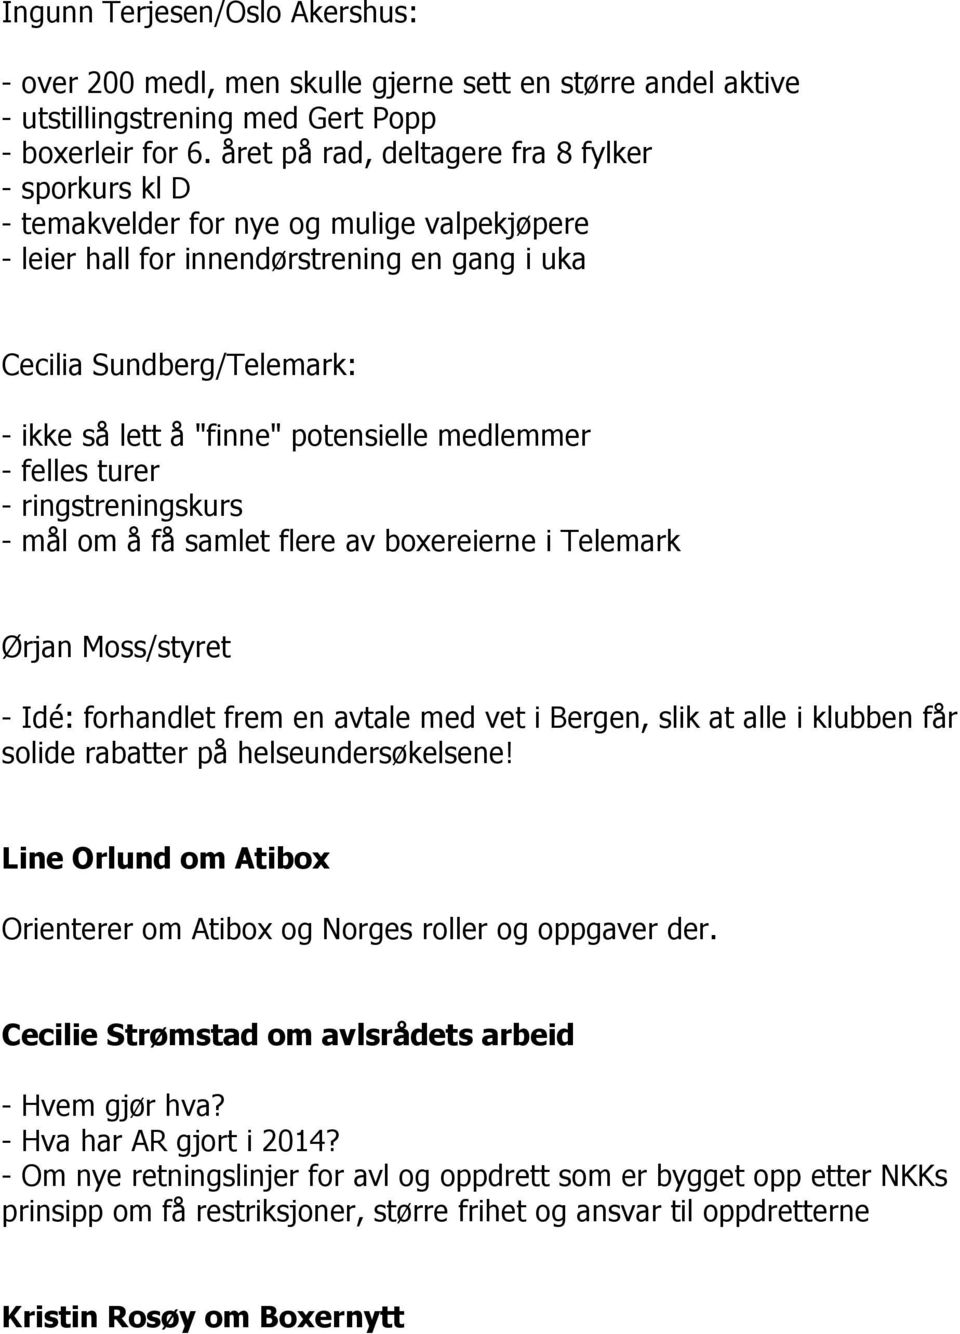 potensielle medlemmer - felles turer - ringstreningskurs - mål om å få samlet flere av boxereierne i Telemark Ørjan Moss/styret - Idé: forhandlet frem en avtale med vet i Bergen, slik at alle i